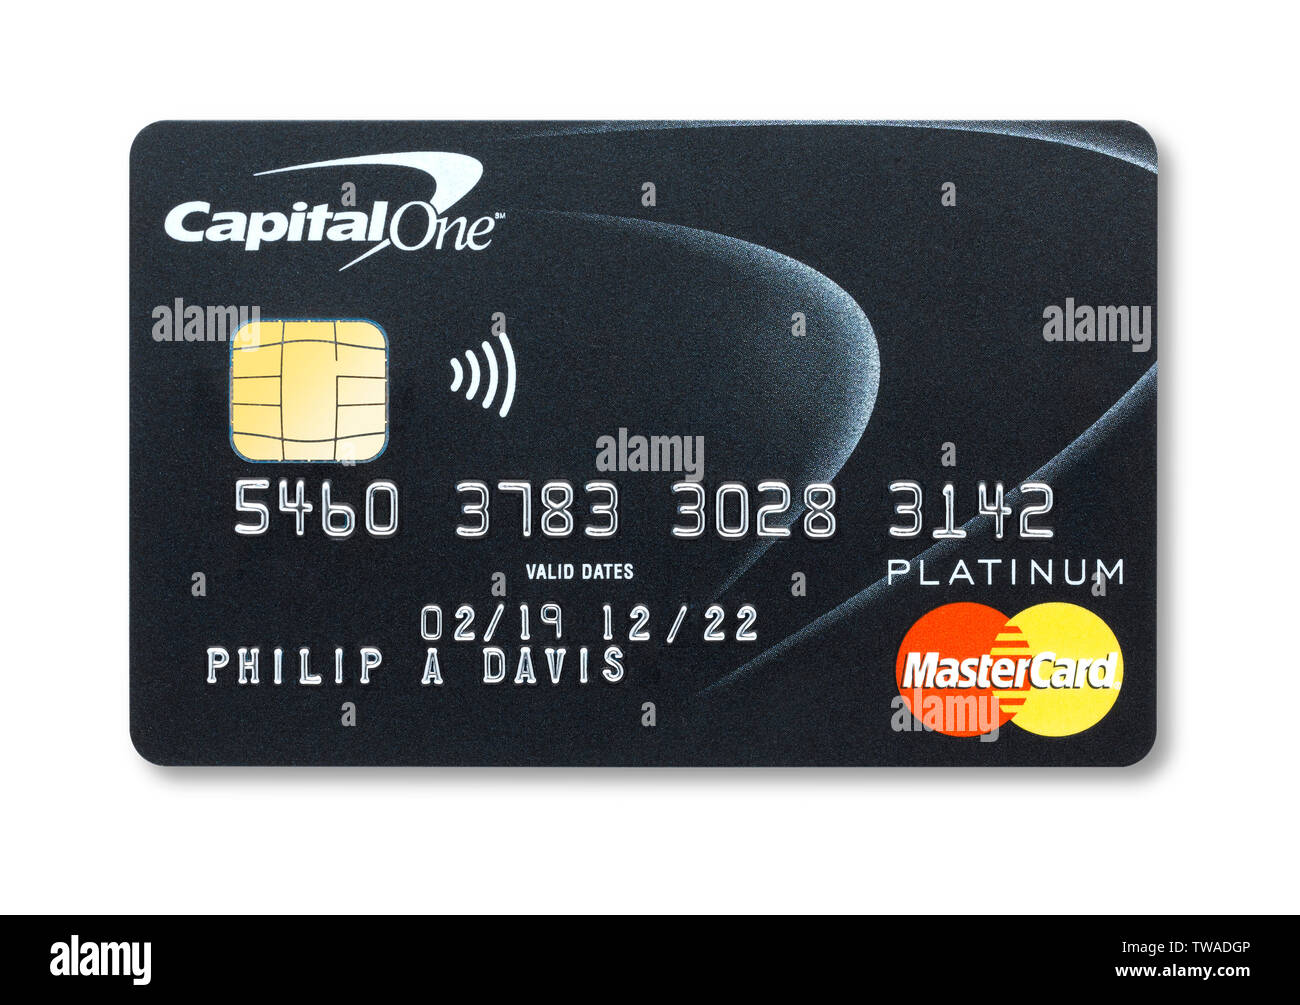 Carta di credito Mastercard Capital One Foto Stock